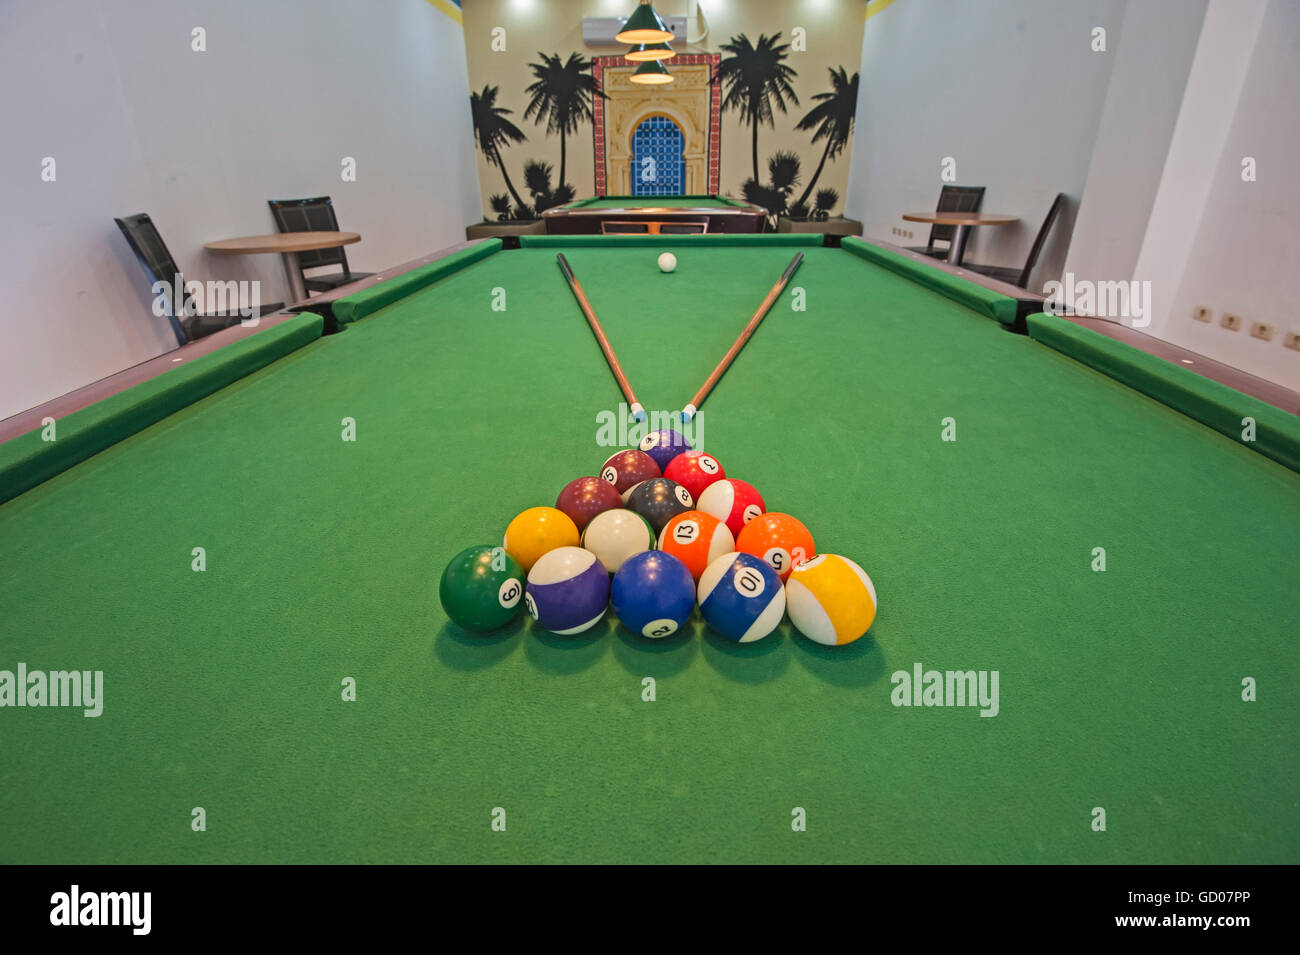 Libre de boules de billard sur feutre vert table avec des repères visuels dans la piscine salle de jeux Banque D'Images